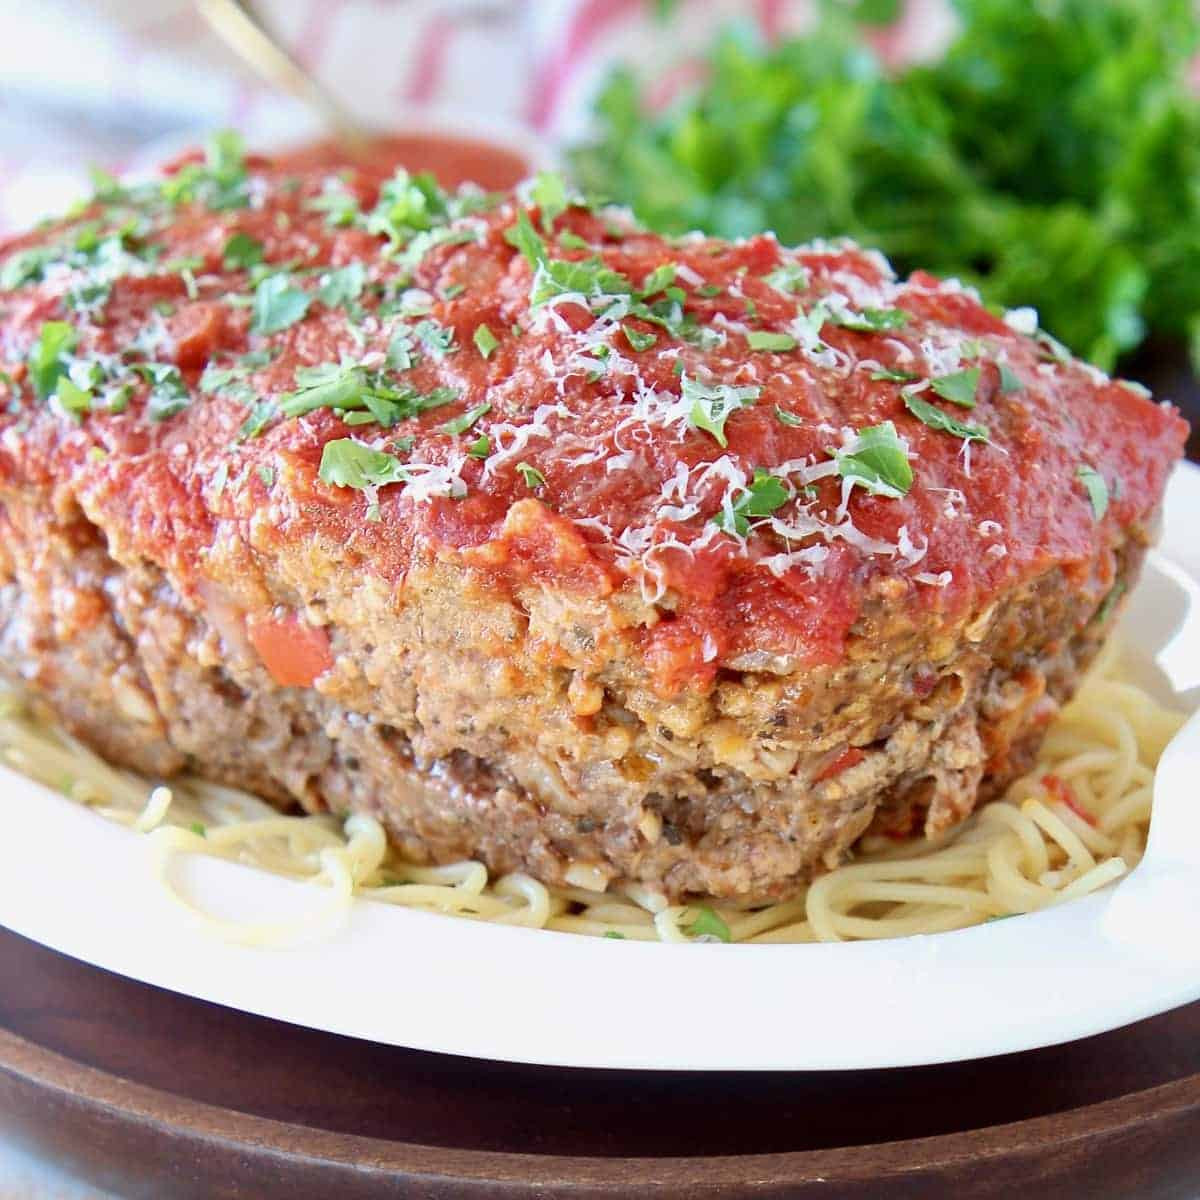 Italian Meatloaf Recipe Easy Elegant Italian Meatloaf Quick &amp; Easy Recipe